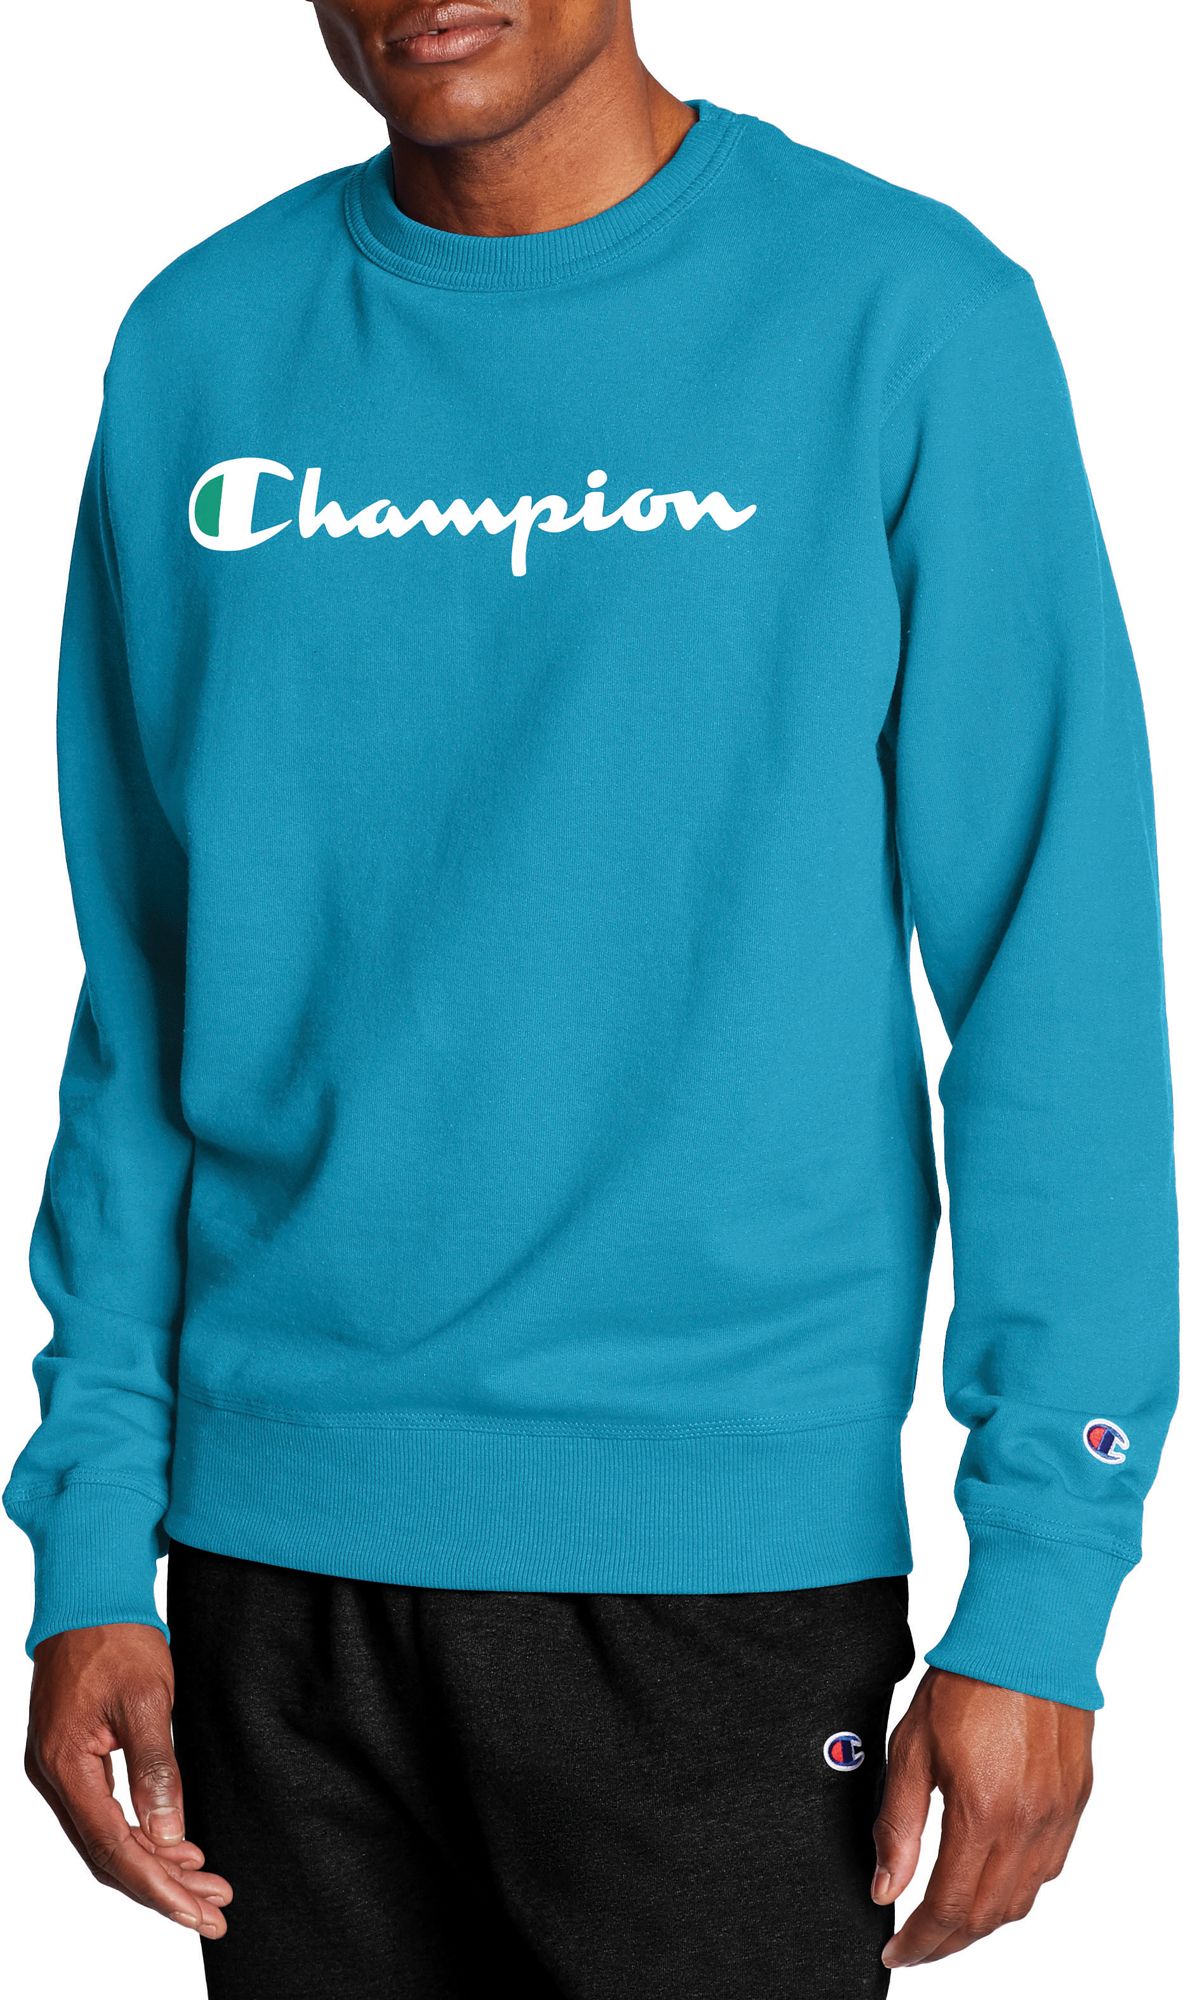 champion crew neck turquoise